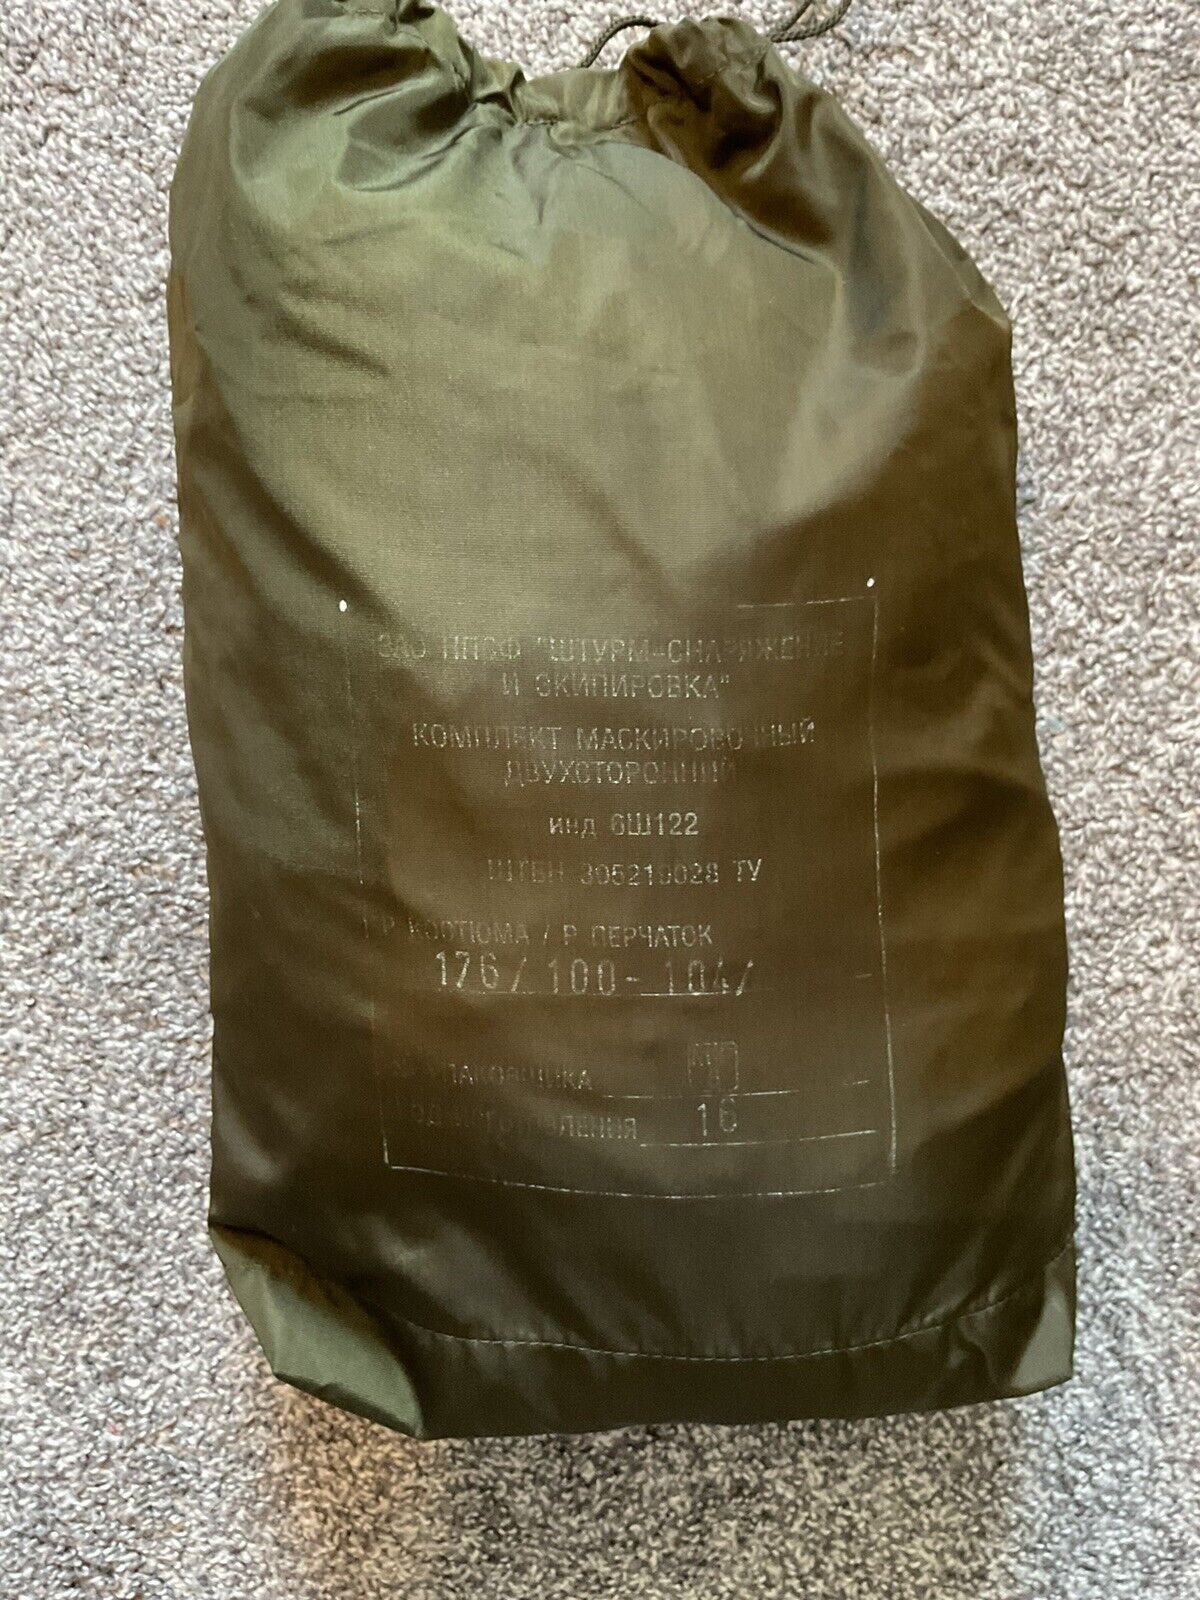 Original 6sh122 Russian Ratnik Oversuit With Matching Bag